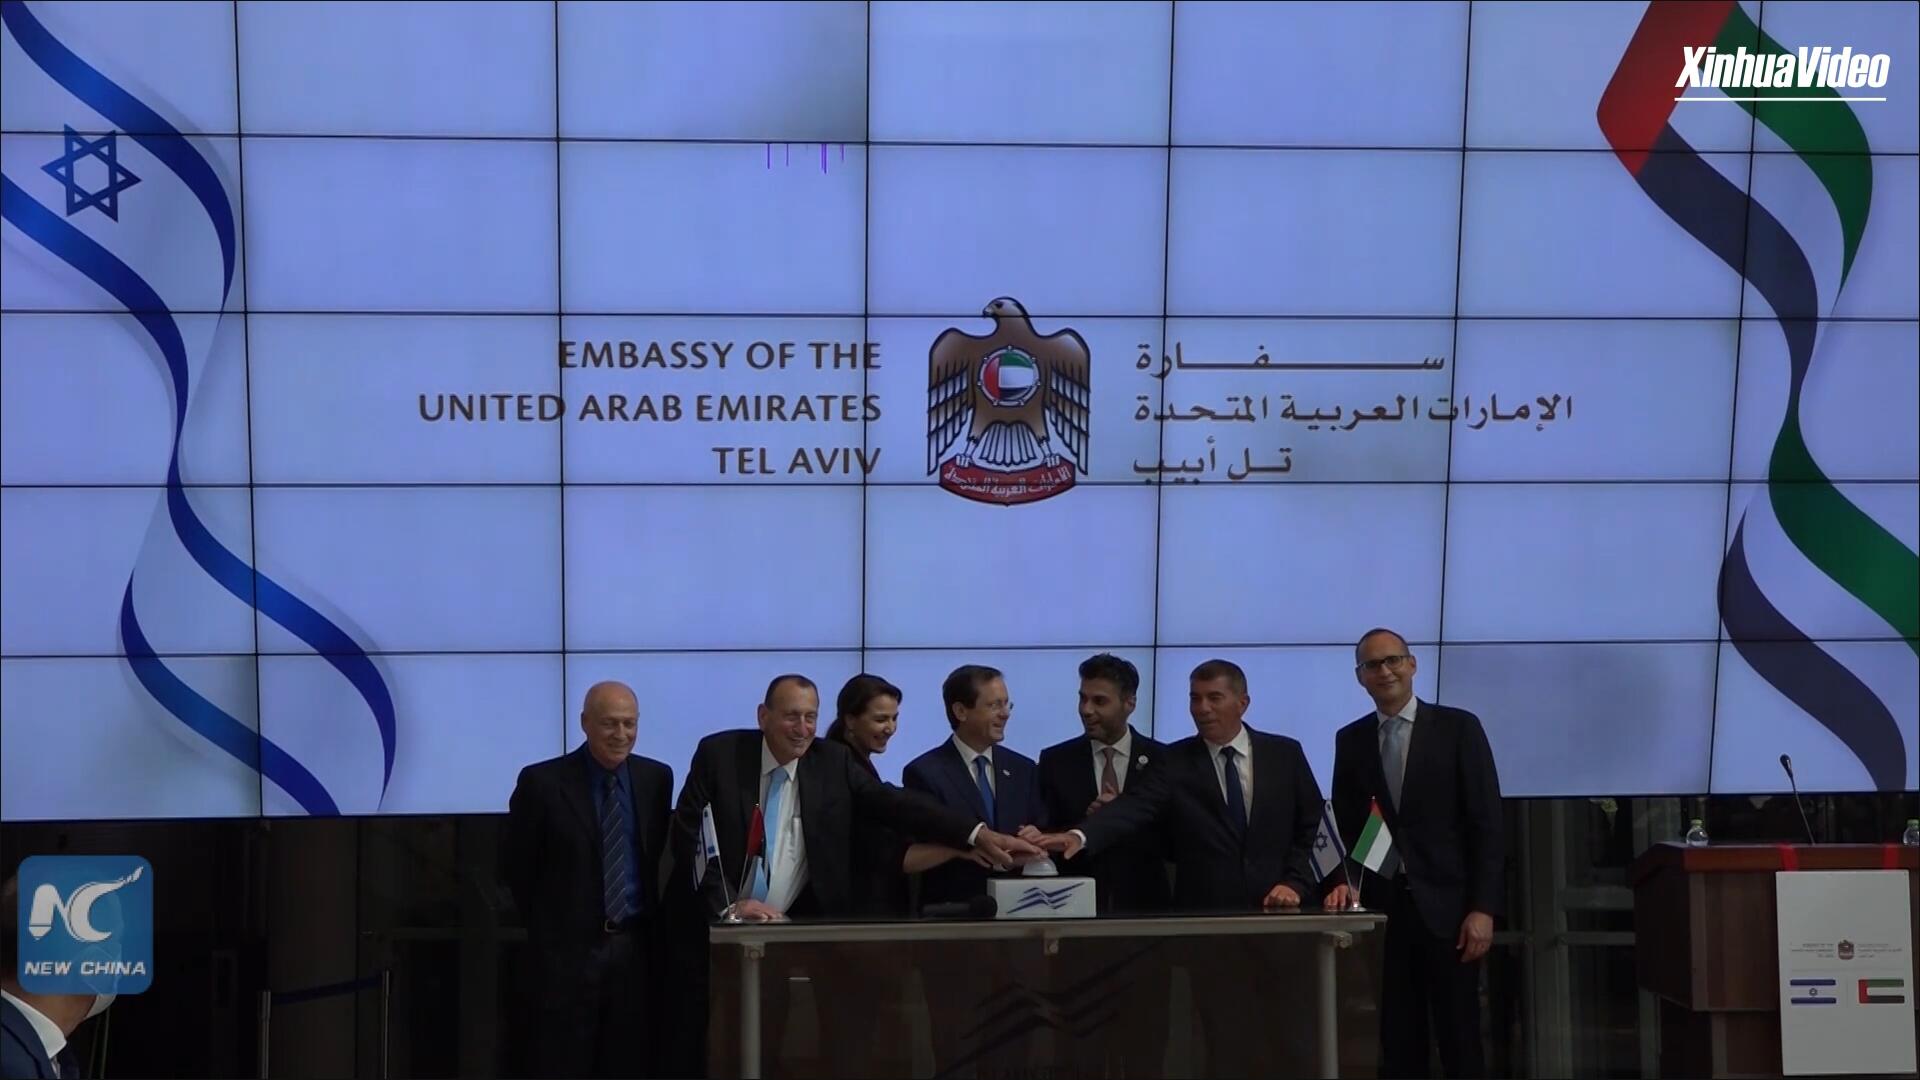 فيديو: الإمارات تفتتح سفارتها في تل أبيب بعد اتفاق التطبيع